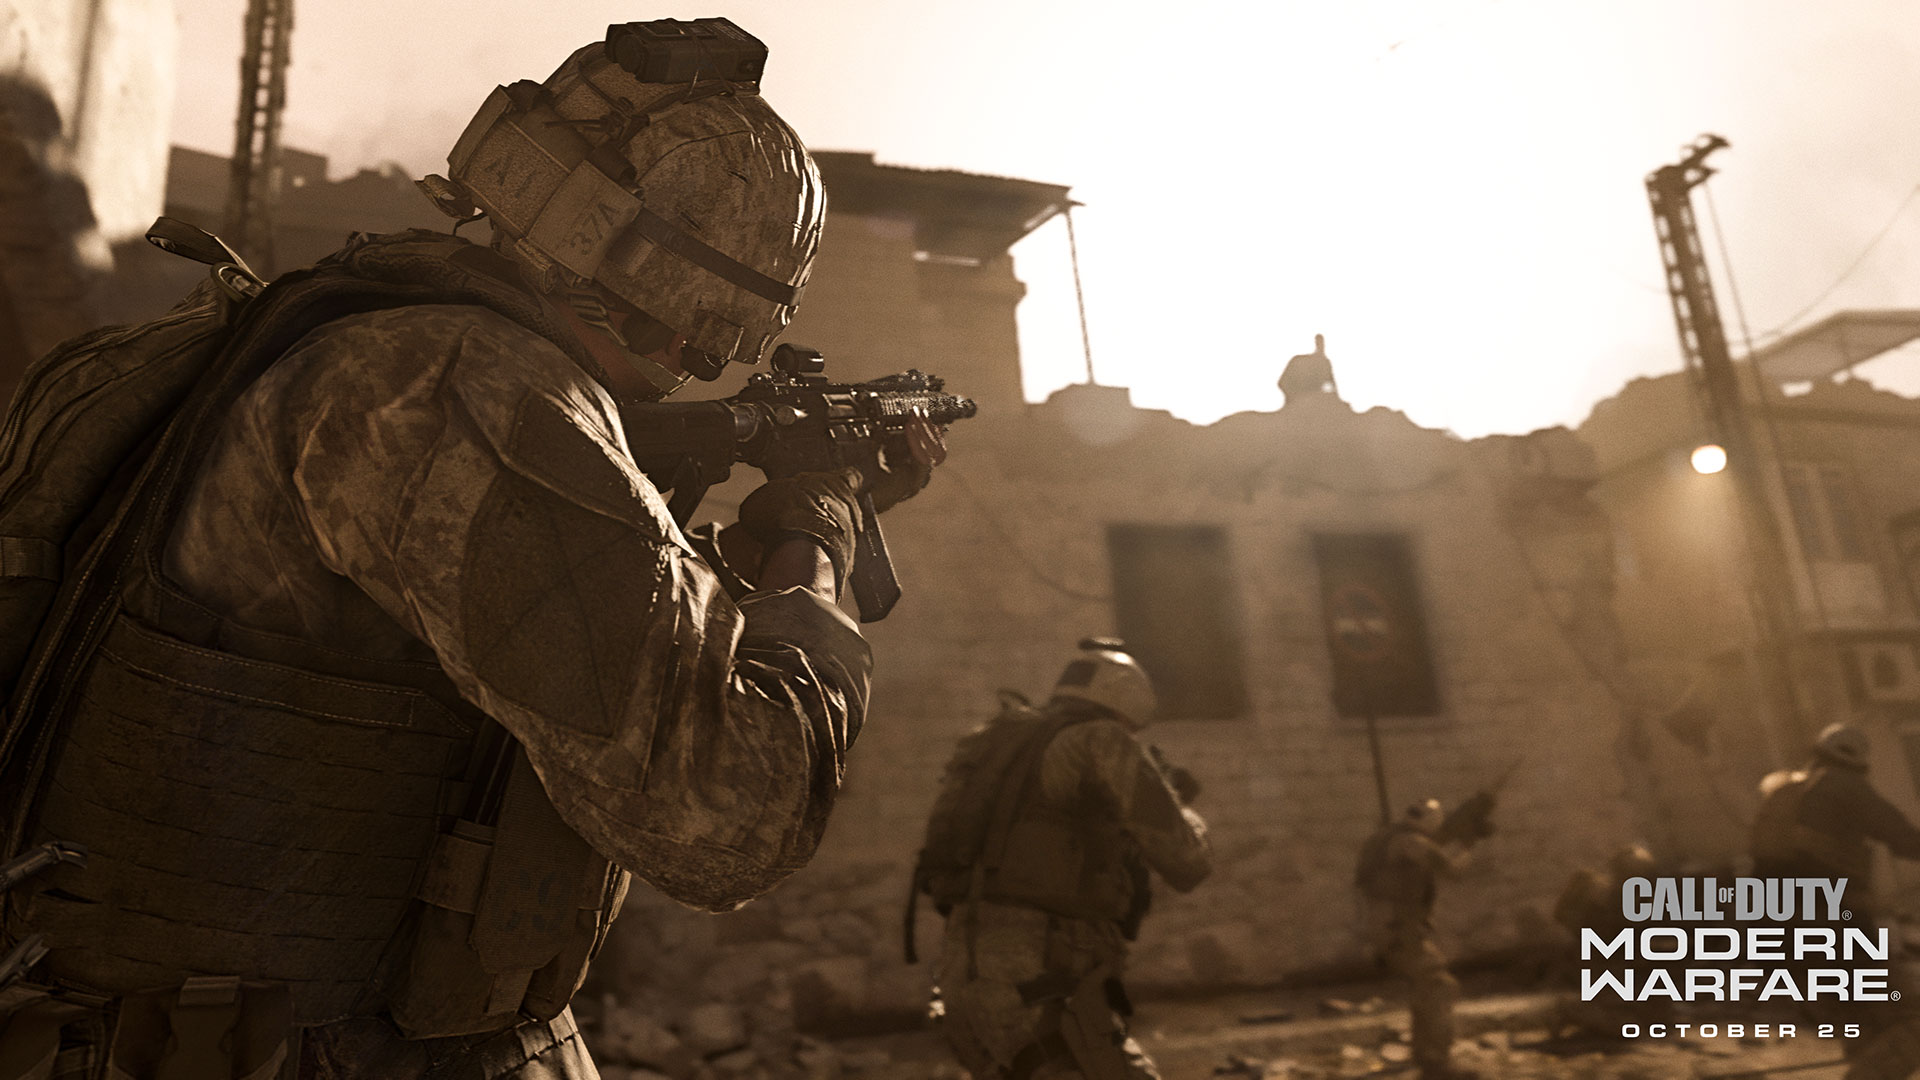 Call of Duty: Modern Warfare (2019) release date, trailers ... - 